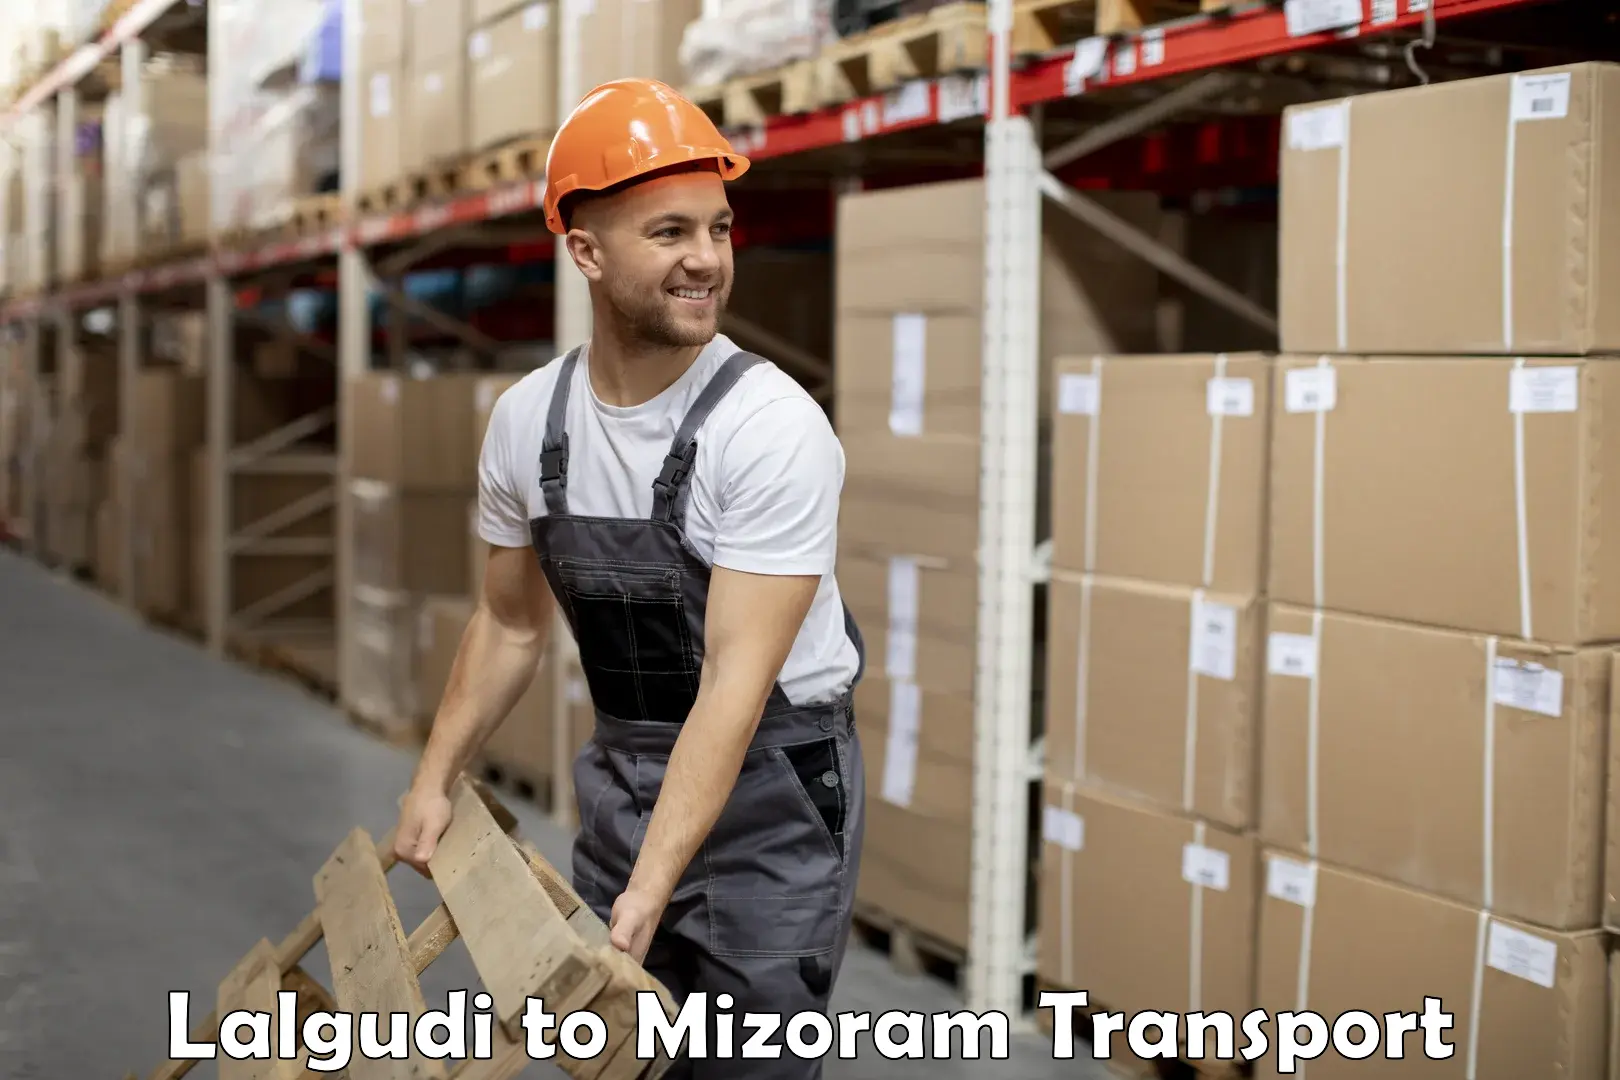 Delivery service Lalgudi to Mizoram